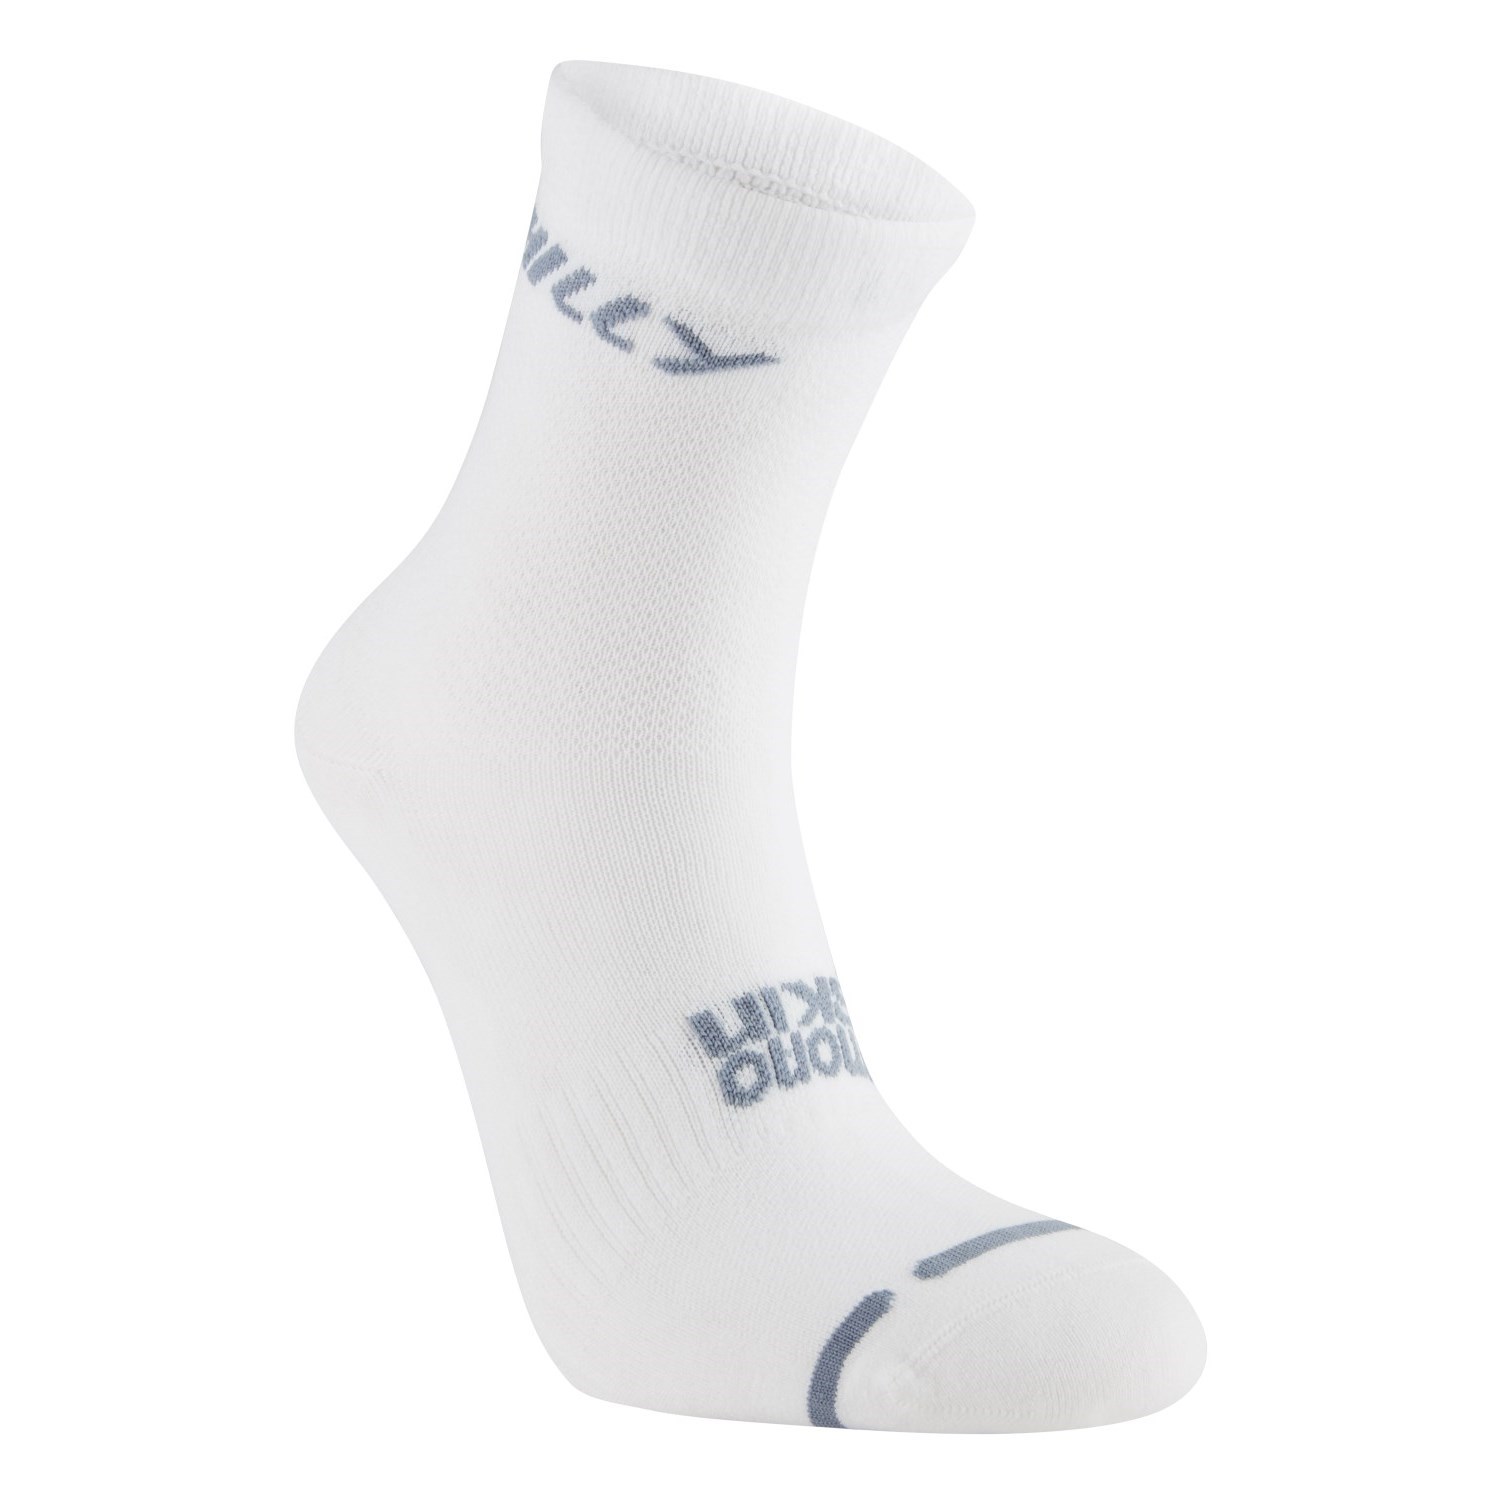 Hilly Lite Anklet - Running Socks - White/Grey